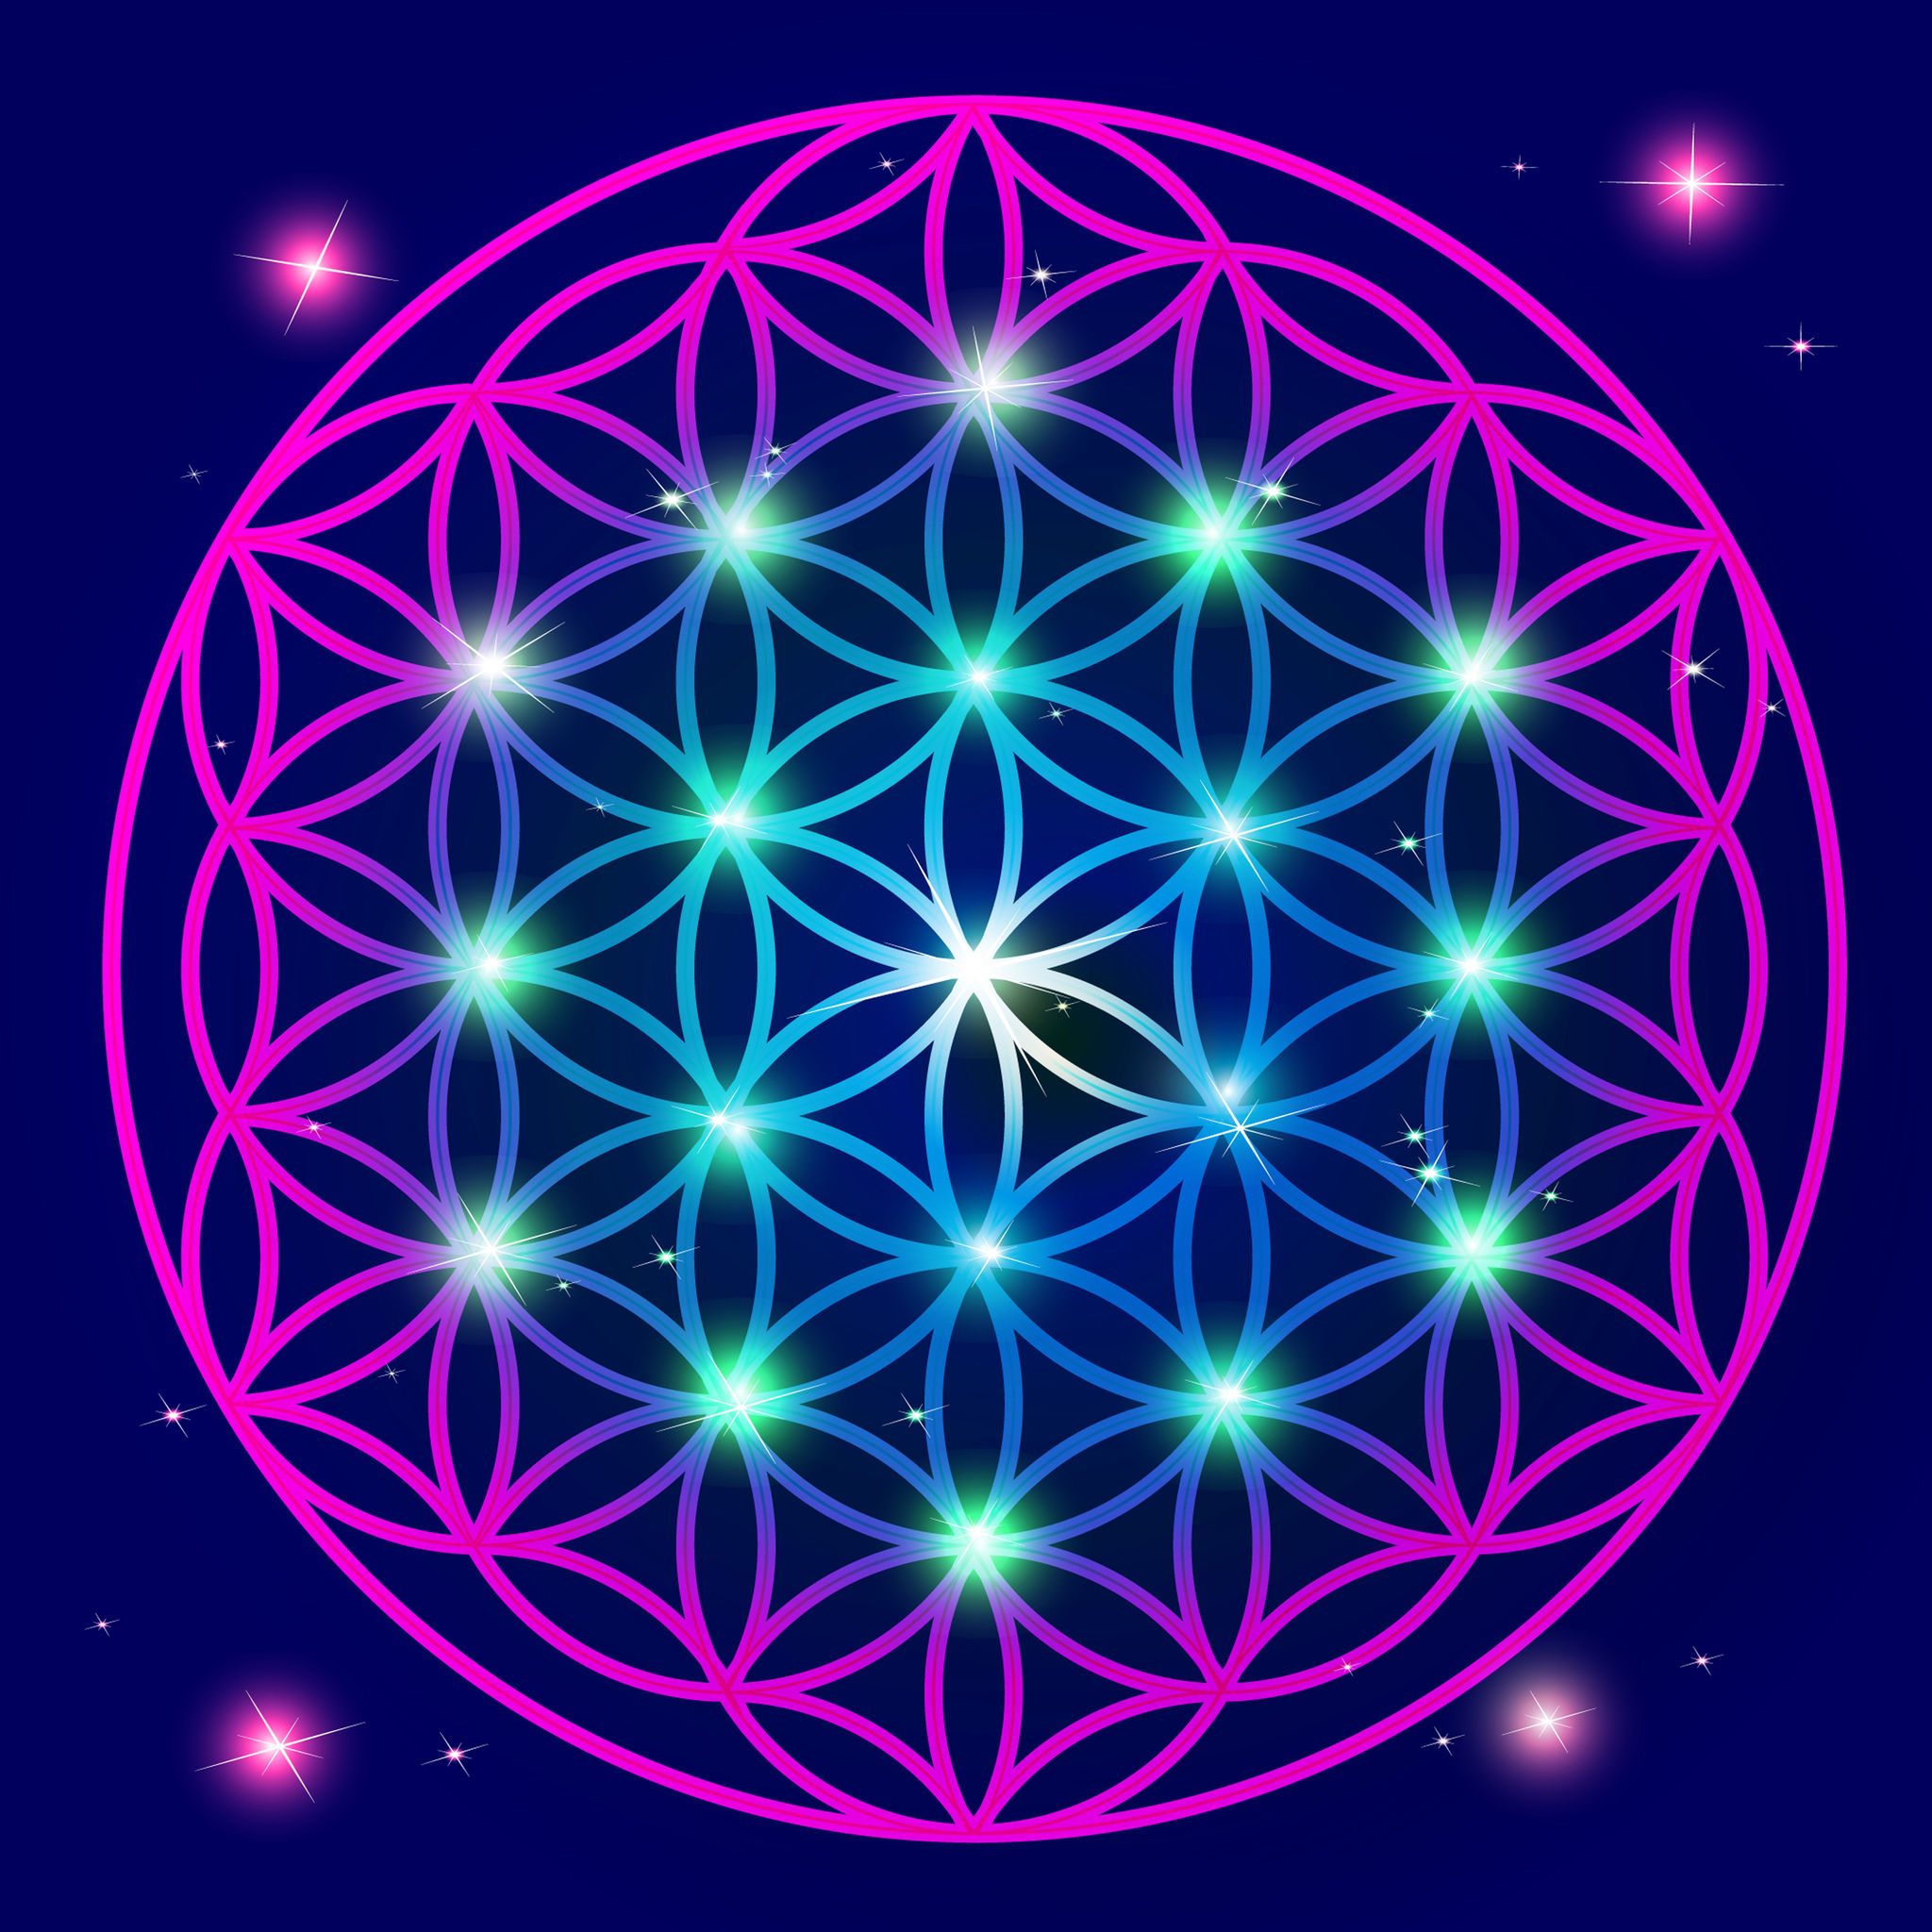 Geometria sagrada, Notícias alternativas, novo paradigma, consciência, espiritualidade, conscientização